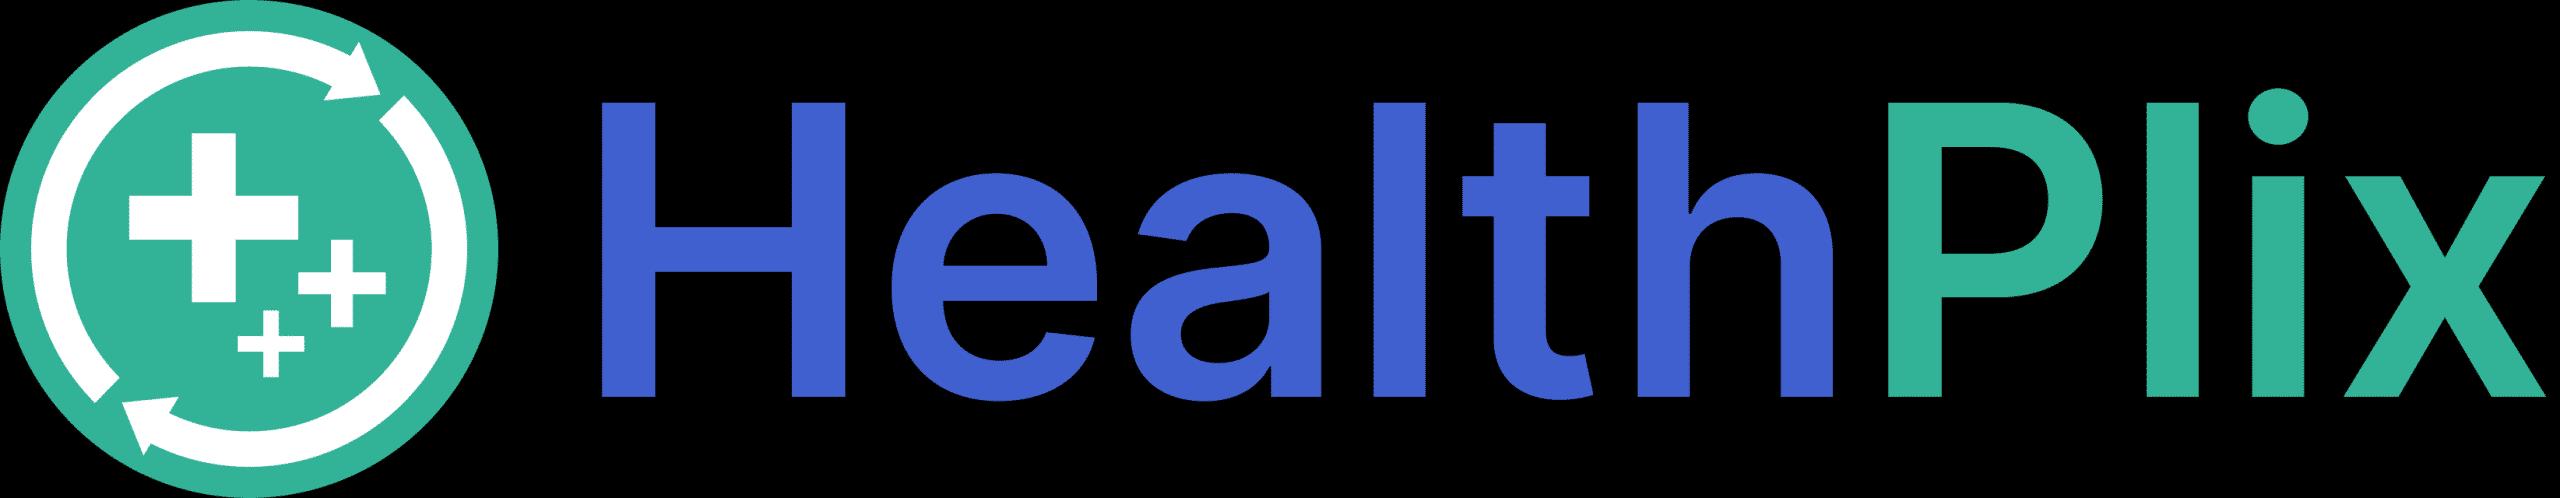 HealthPlix_logo